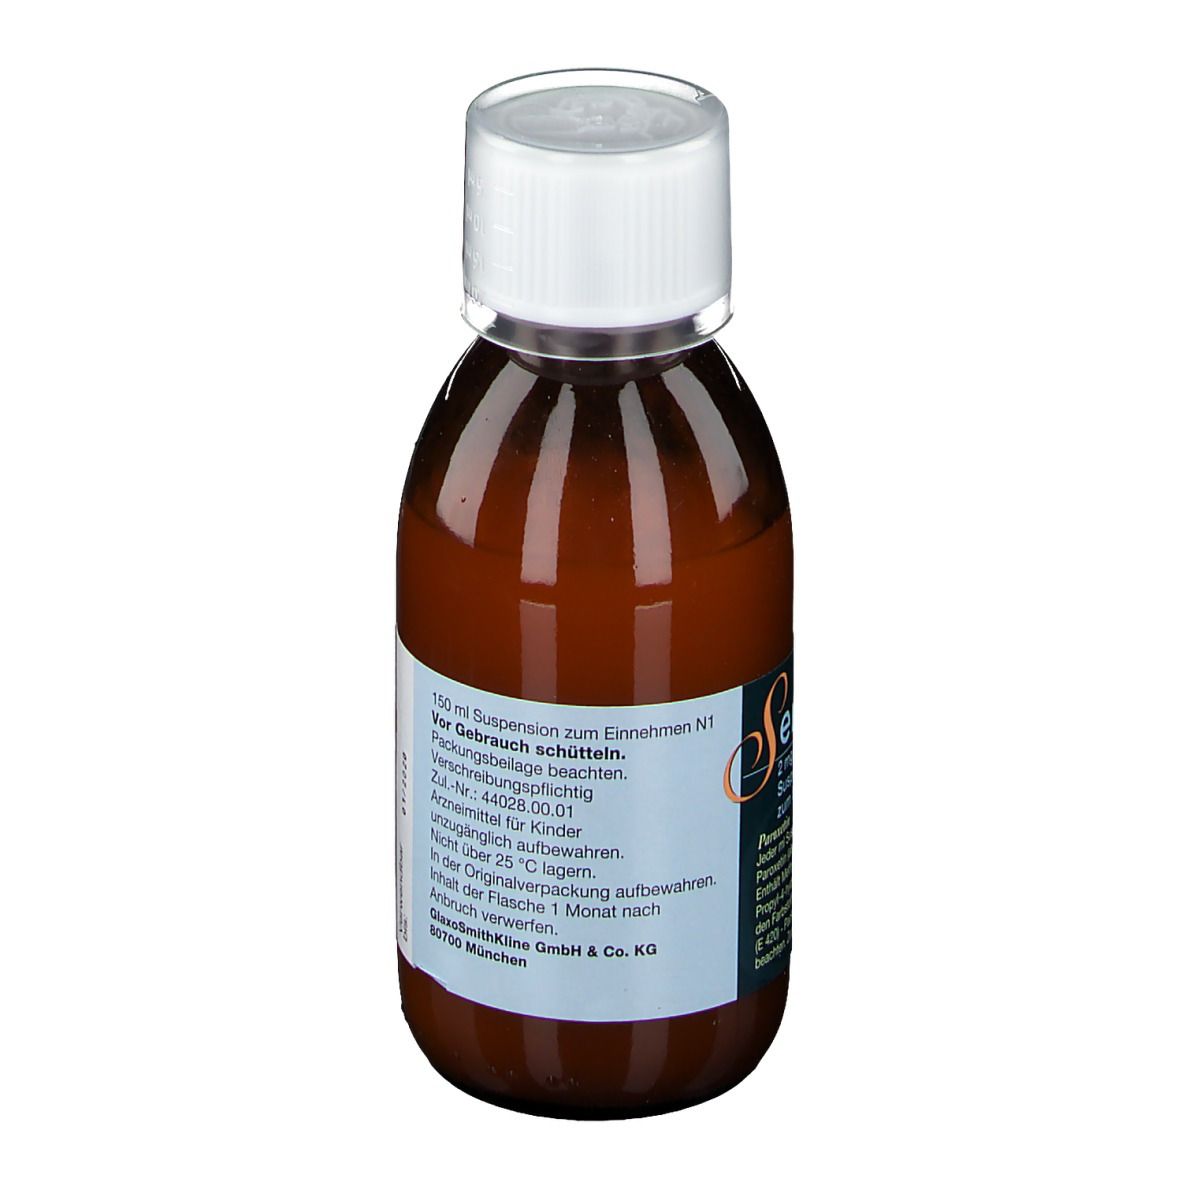 Seroxat® 2 mg/ml